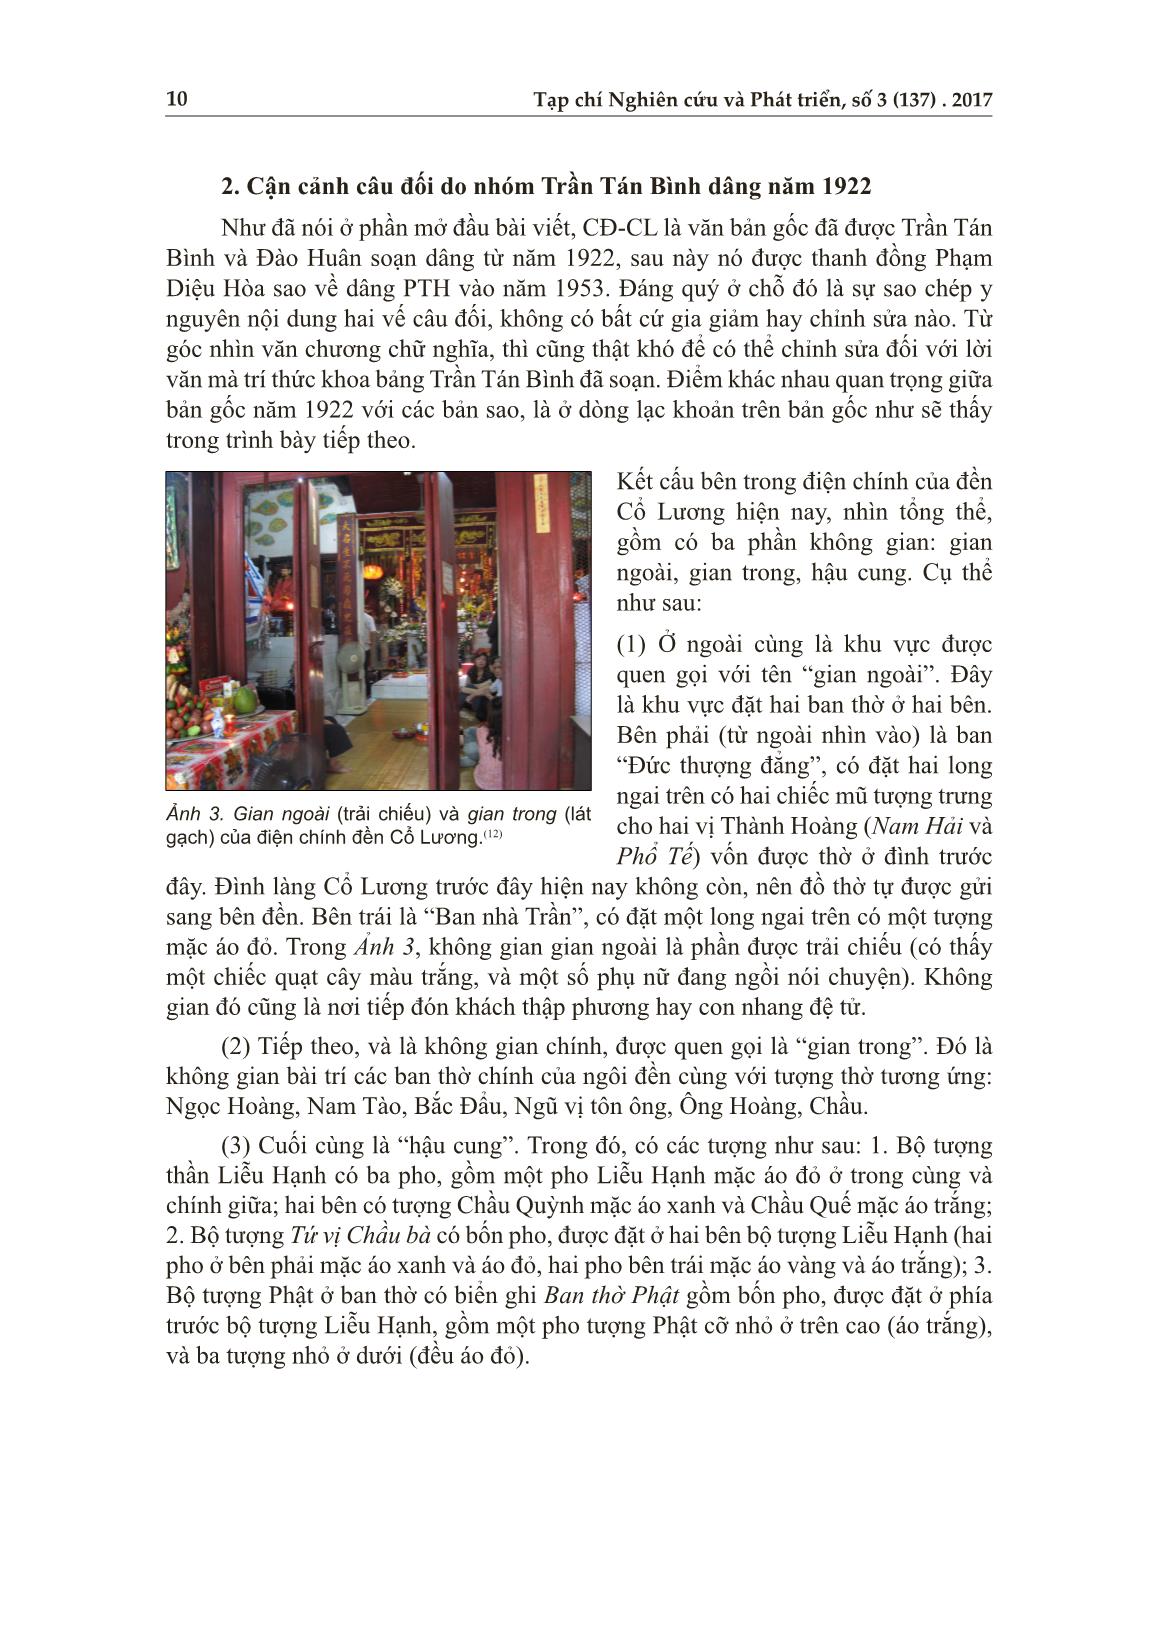 Hình ảnh Mẫu Liễu và phong trào dân tộc đầu thế kỷ XX: Trường hợp trí thức khoa bảng Trần Tán Bình với câu đối dâng năm 1922 cho đền Cổ Lương trang 8